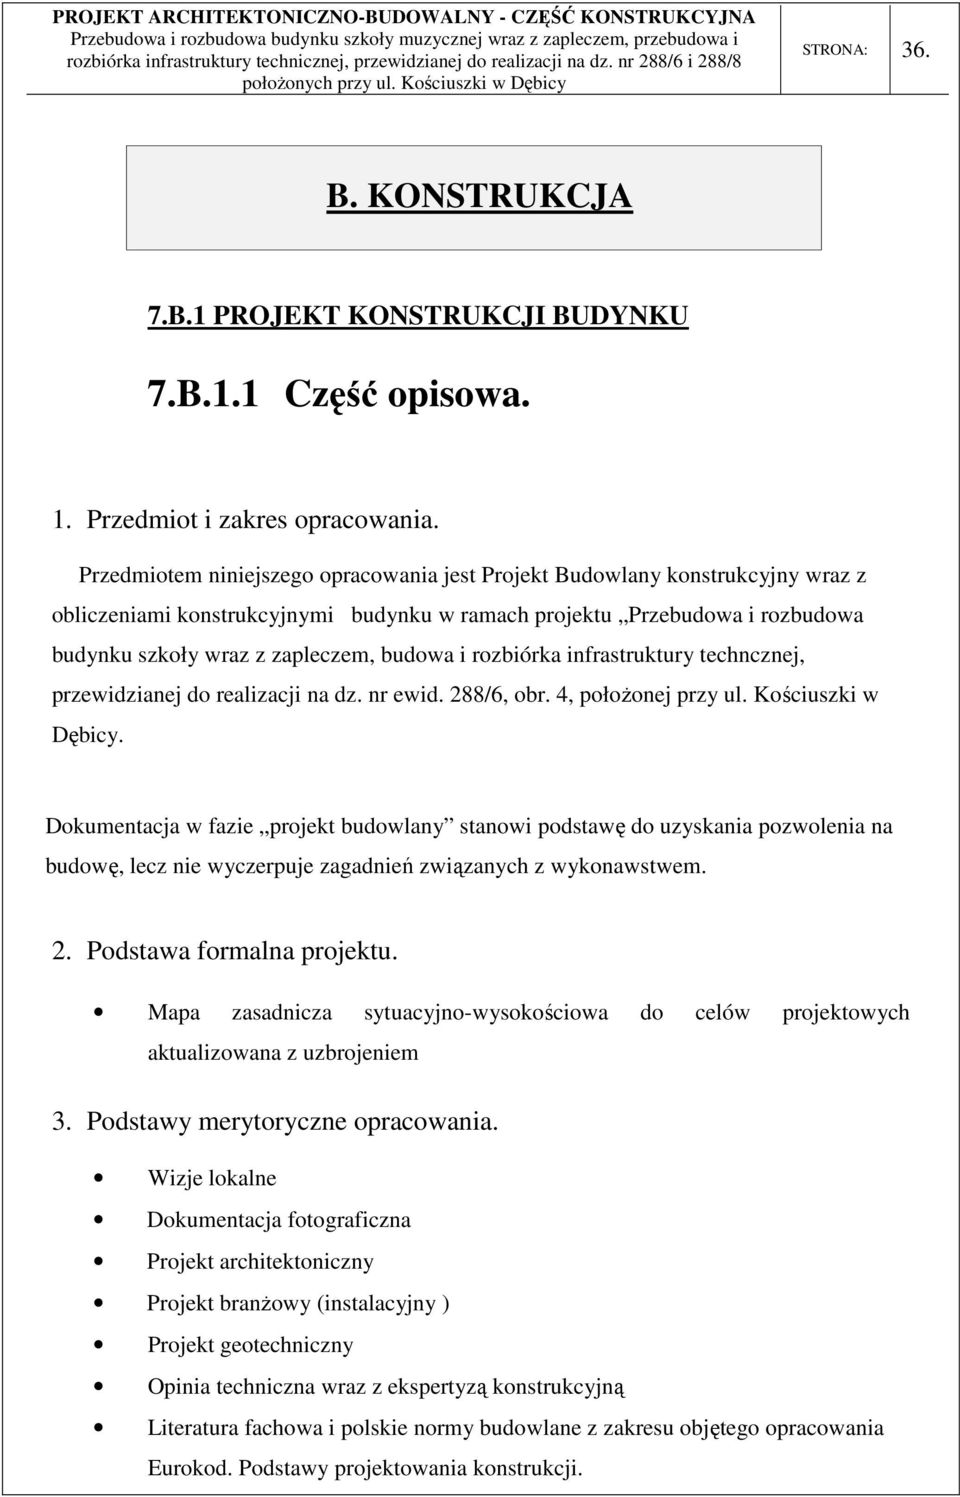 rozbiórka infrastruktury techncznej, przewidzianej do realizacji na dz. nr ewid. 288/6, obr. 4, położonej przy ul. Kościuszki w Dębicy.